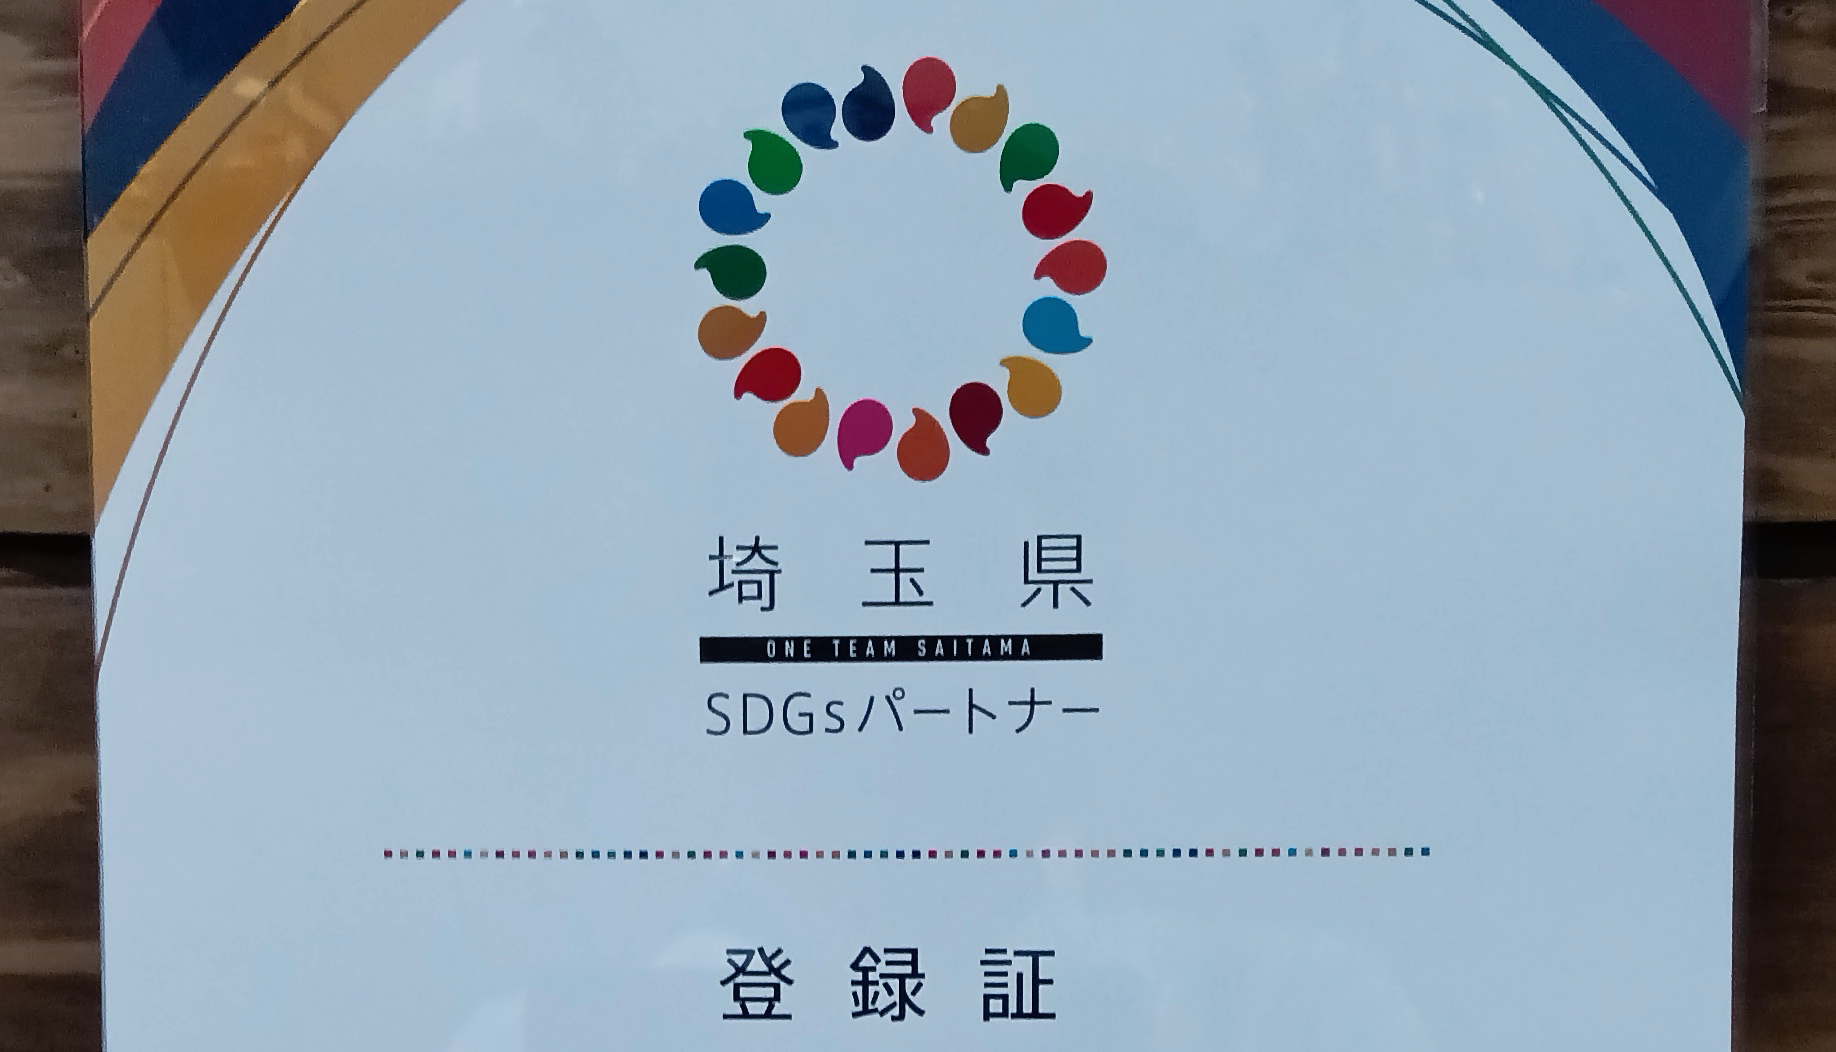 株式会社ICSTは「埼玉県SDGsパートナー登録団体」となりました。